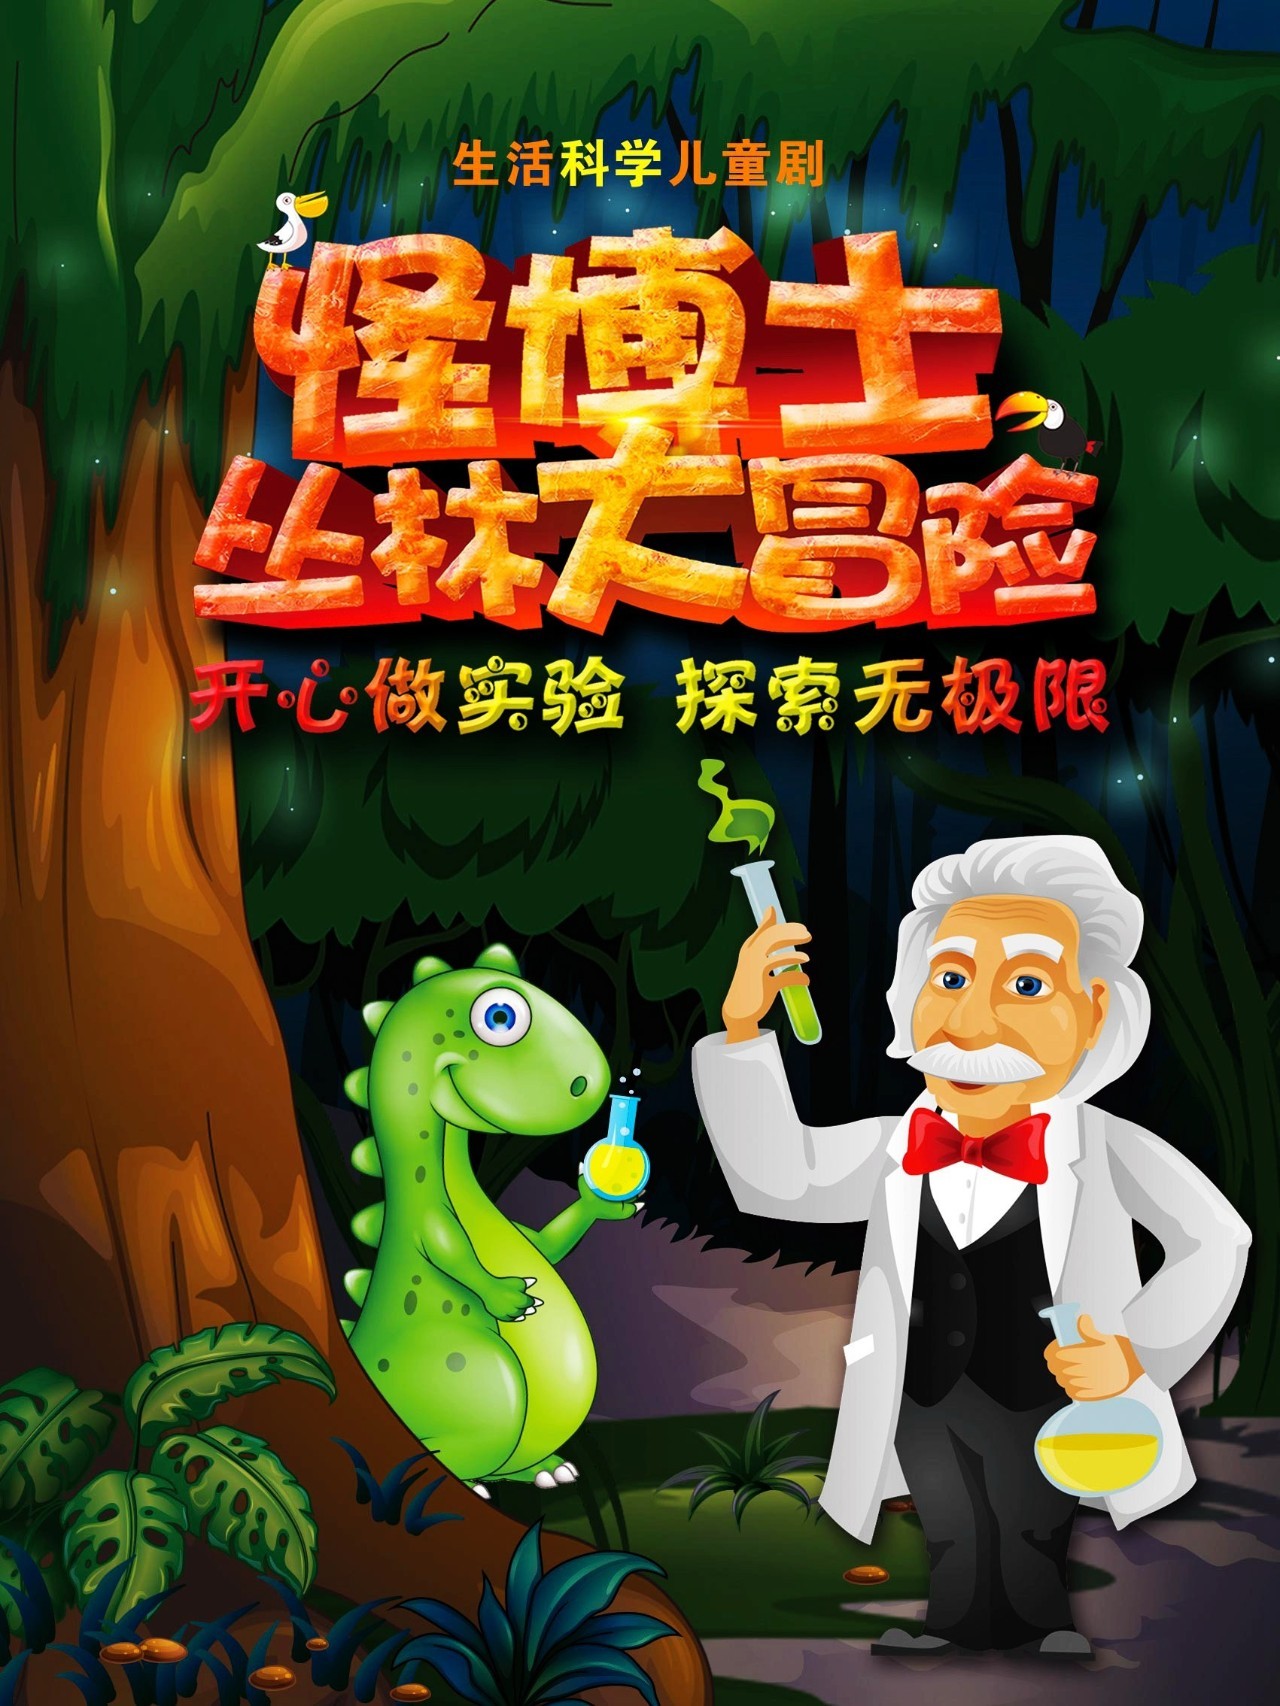 【趣味科学 滑稽表演】11月25日科学儿童剧《怪博士丛林大冒险》,带领